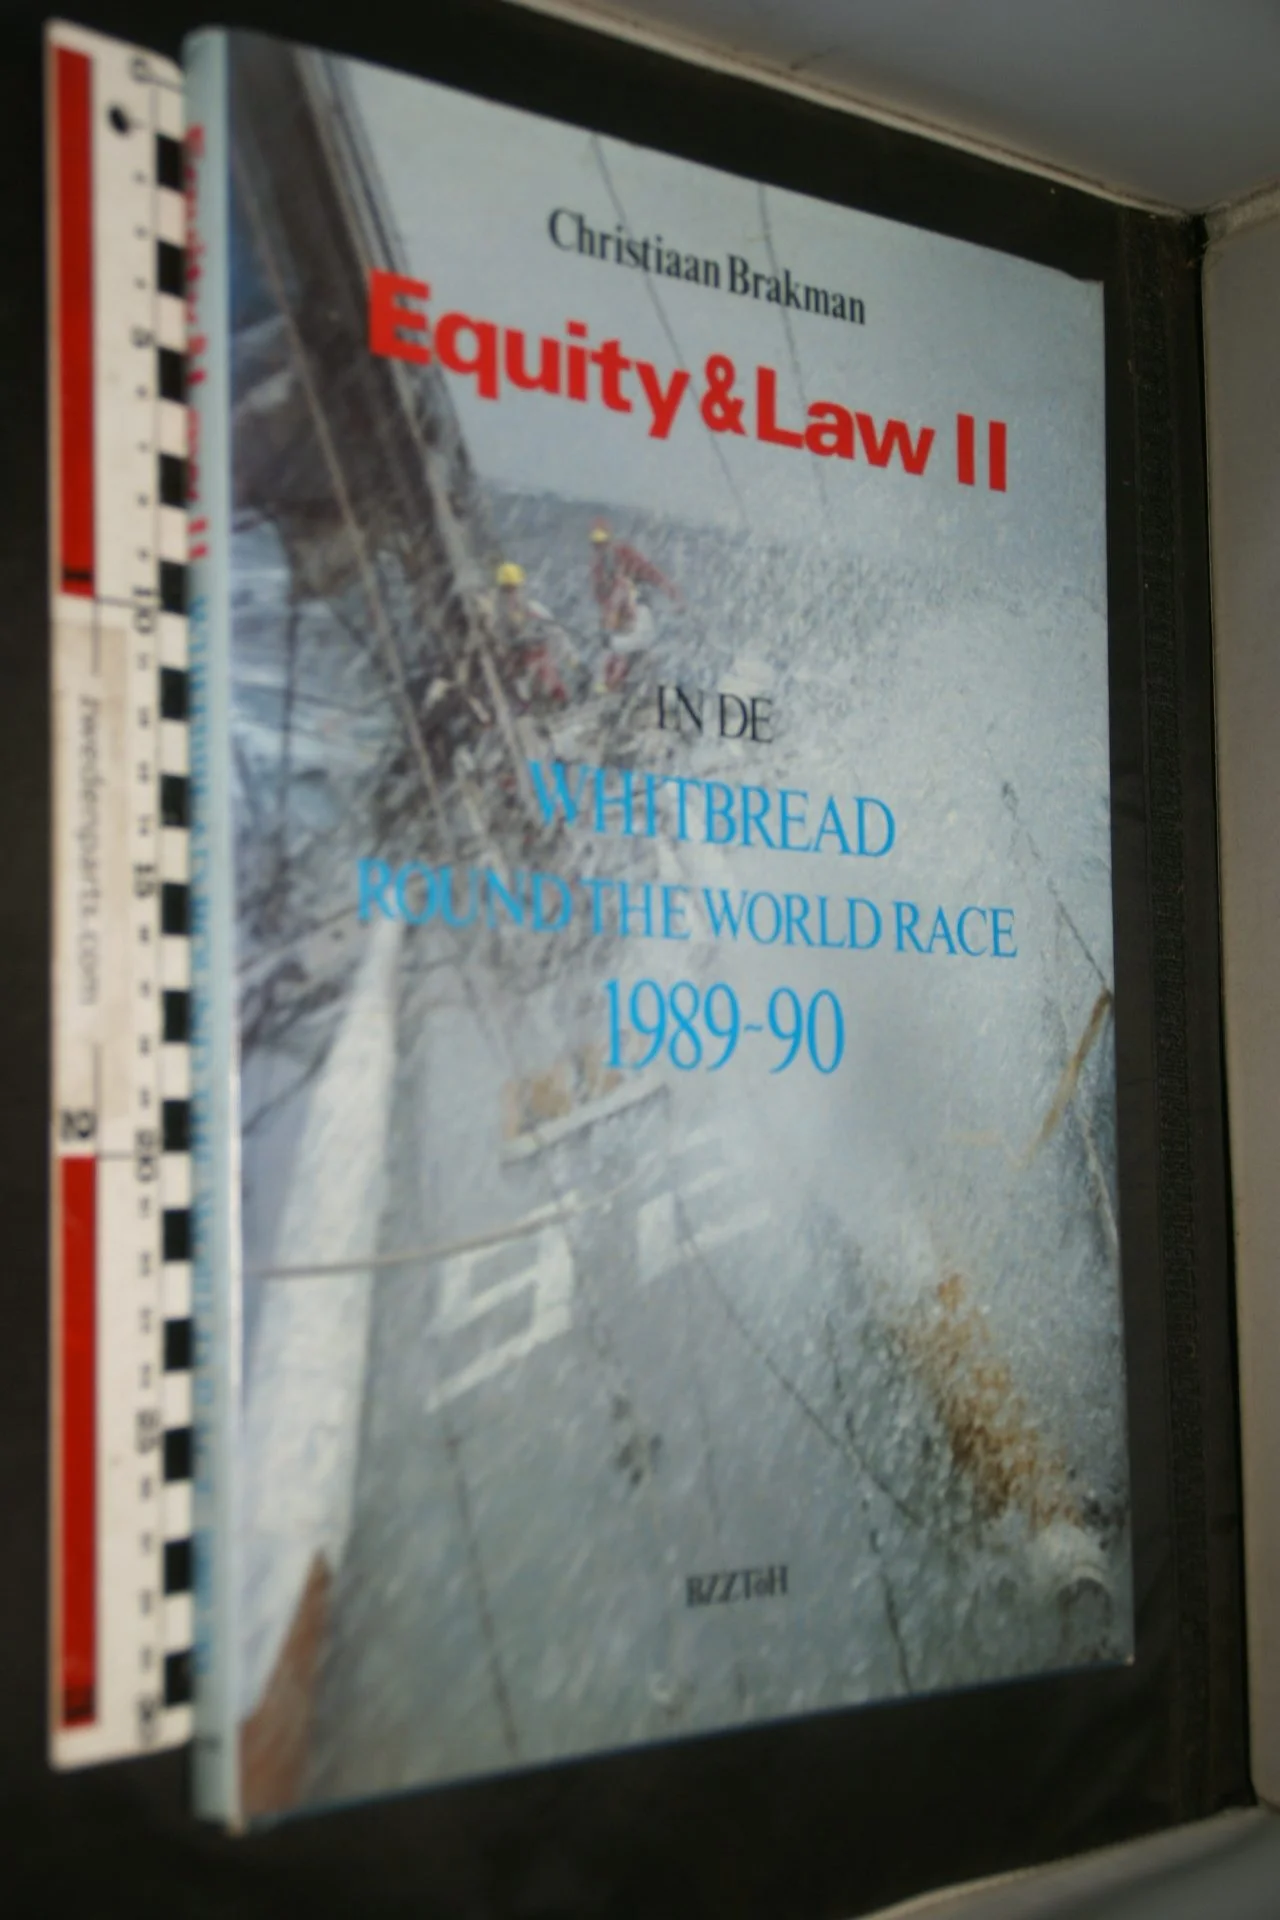 DSC06950 1990 boek Equity & Law II van Christiaan Brakman  ISBN 9062915795